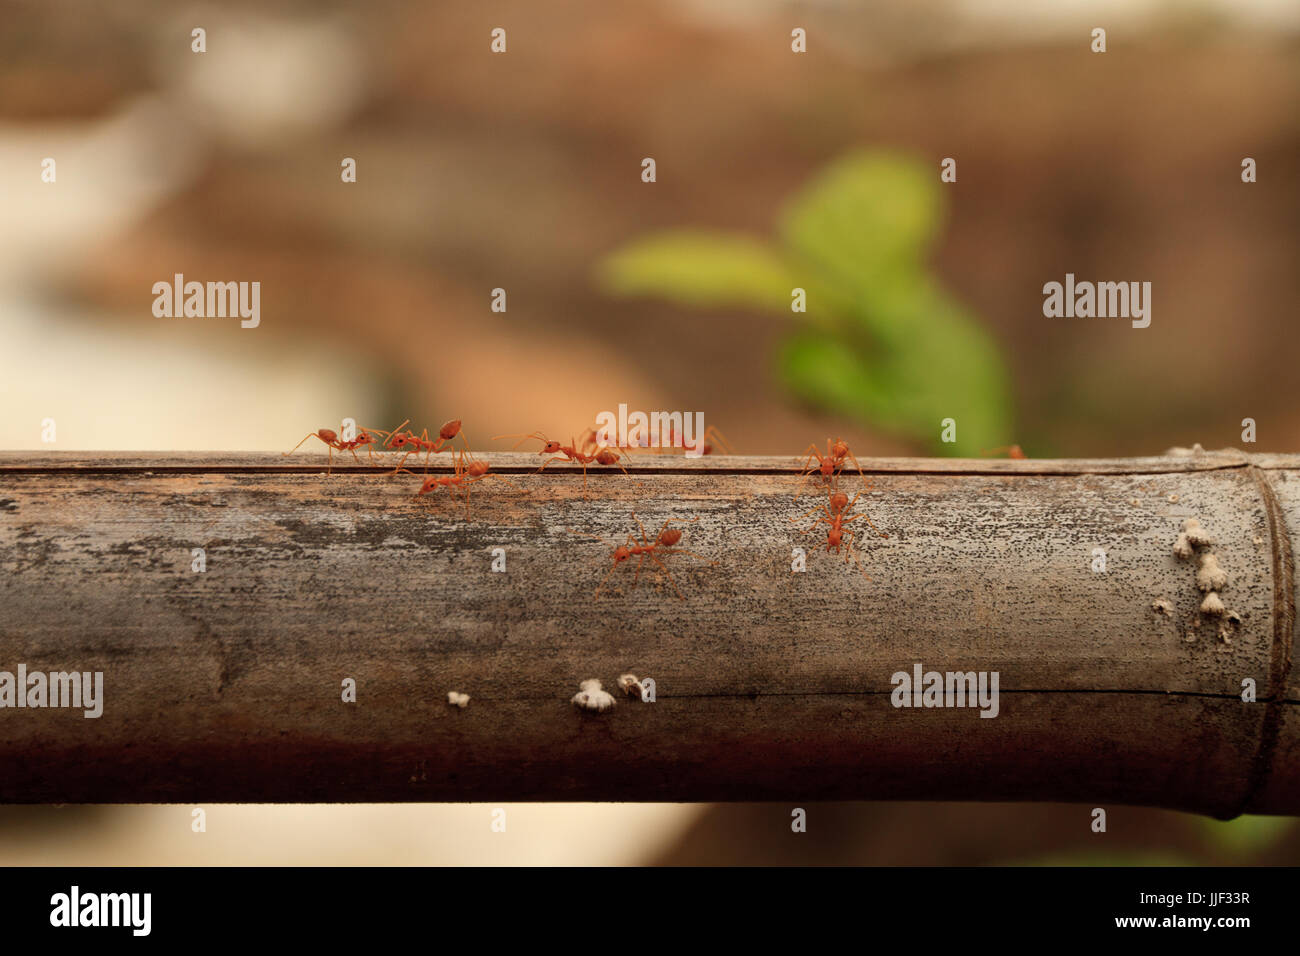 Makroaufnahme der roten Ameise in der Natur. Rote Ameise ist sehr klein. Freiraum für Text. Stockfoto